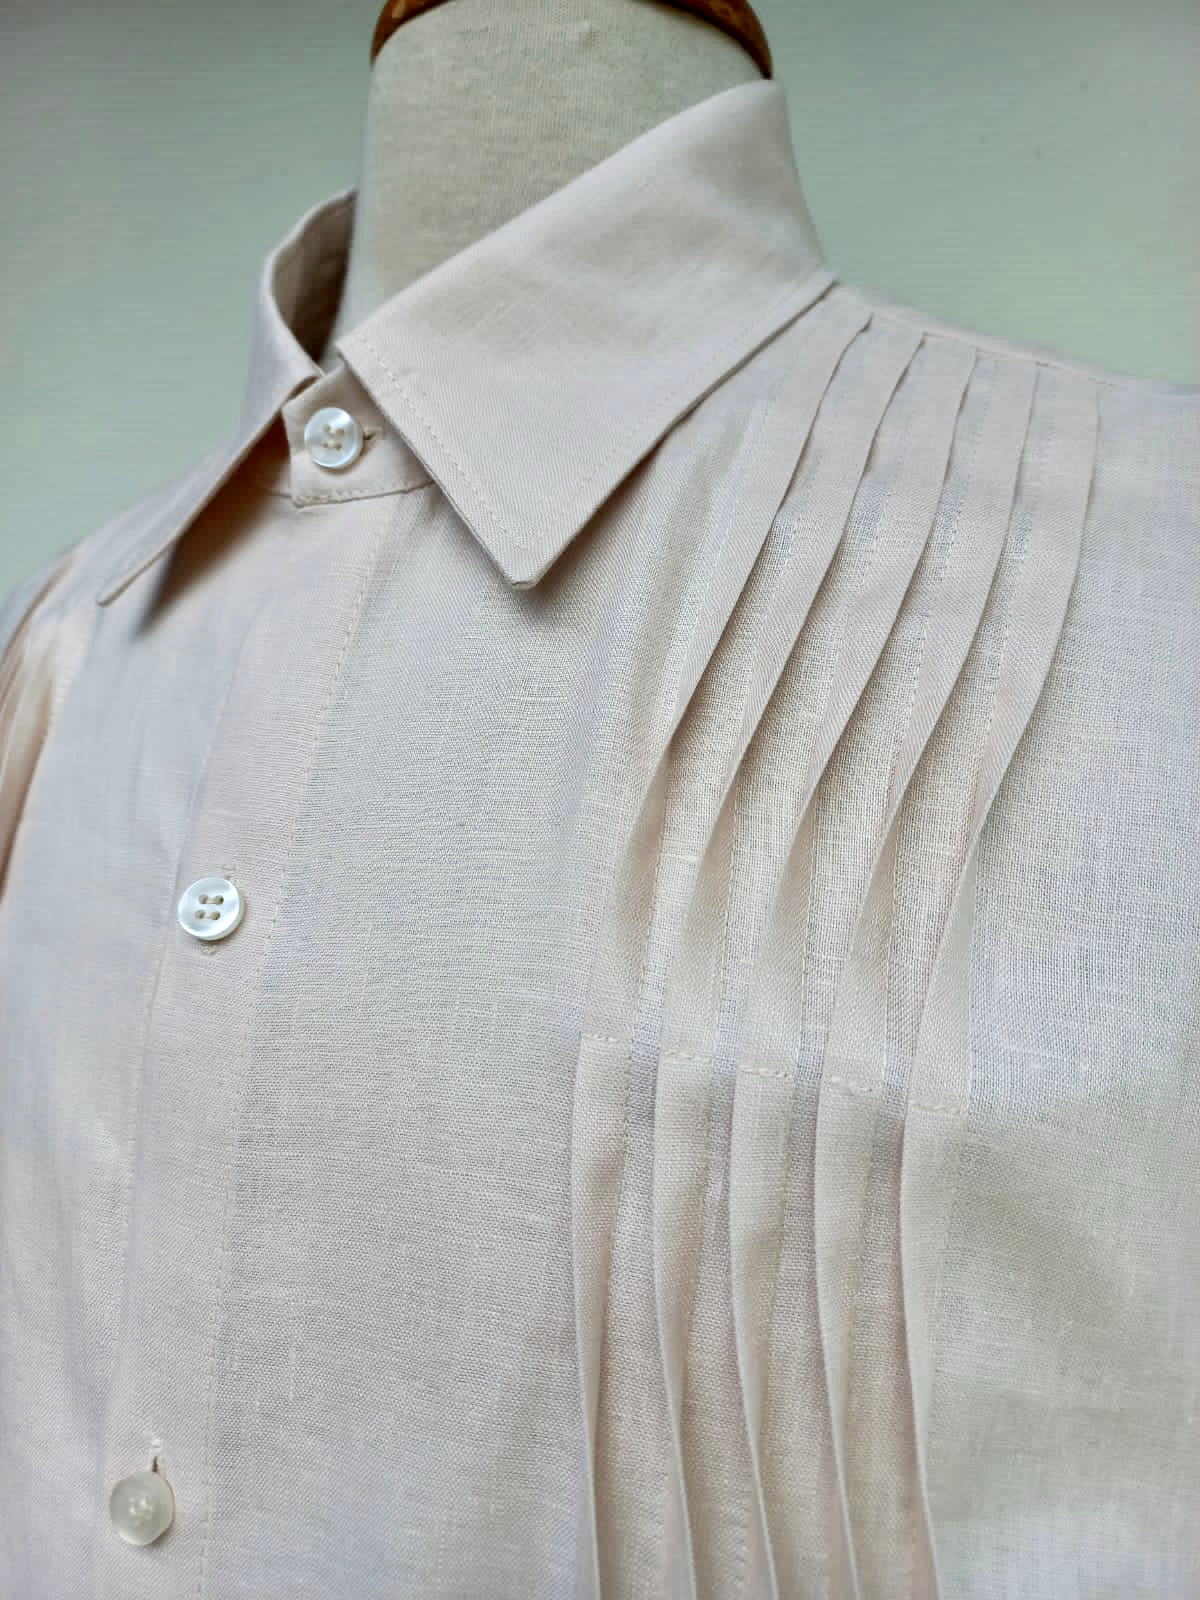 Le Grégoire - Iconic Oversized Boyfriend Shirt in GOTS Cotton